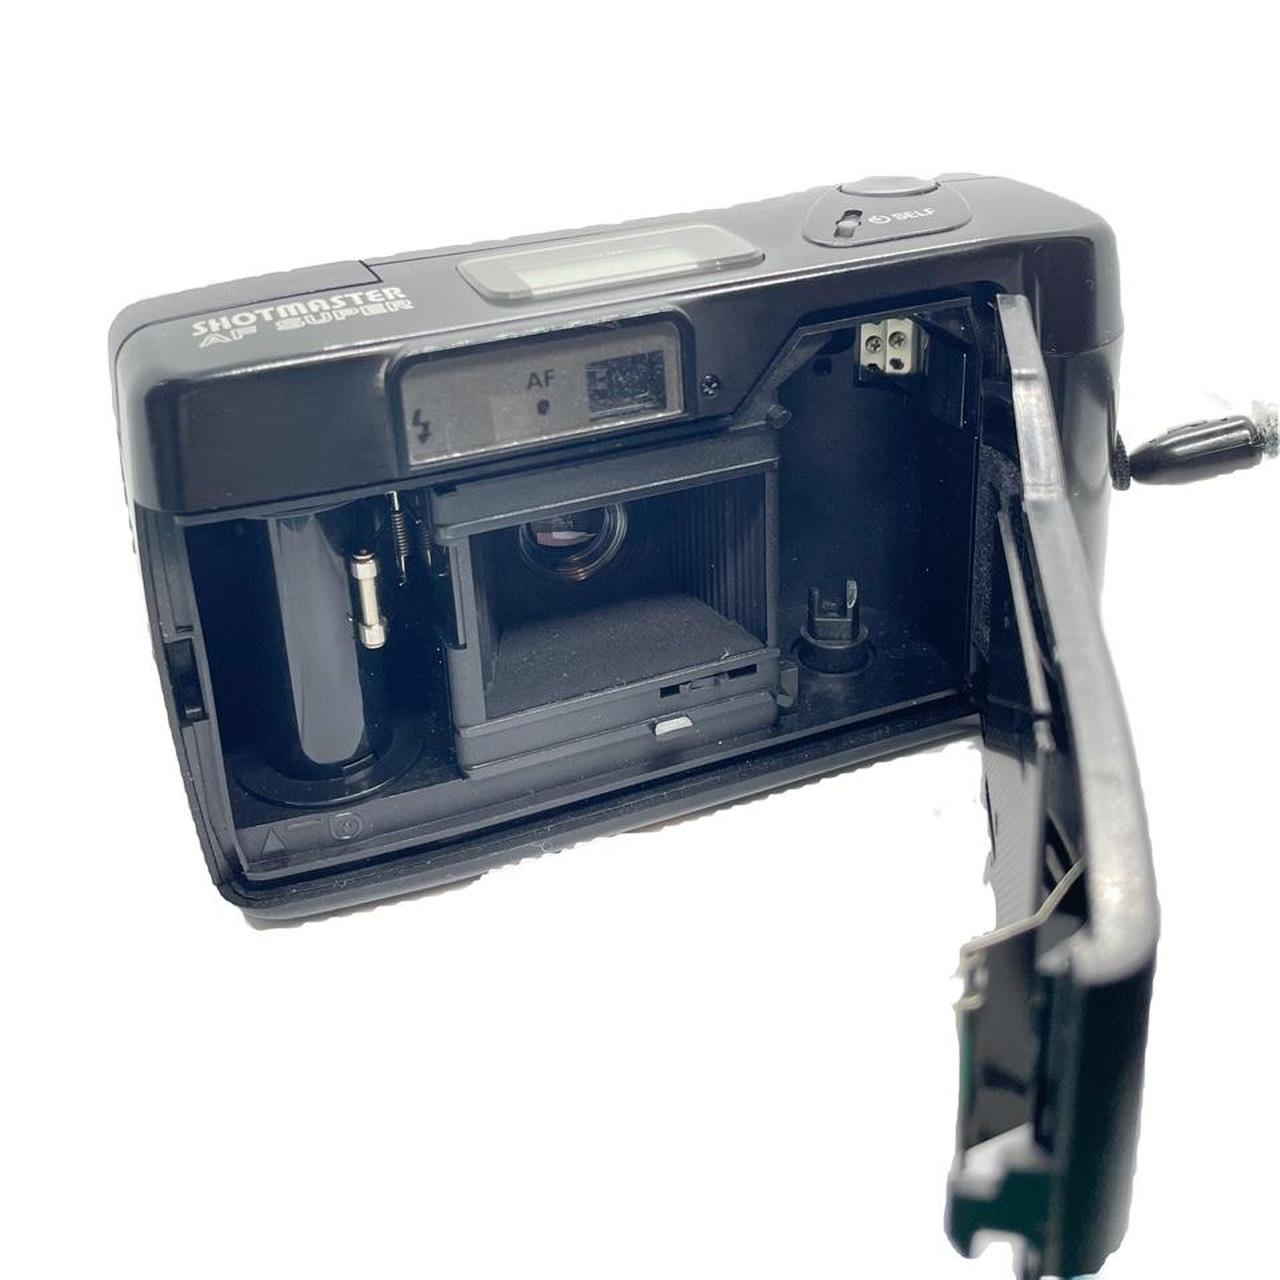 Product Image 3 - Ricoh Shotmaster AF Super 35mm